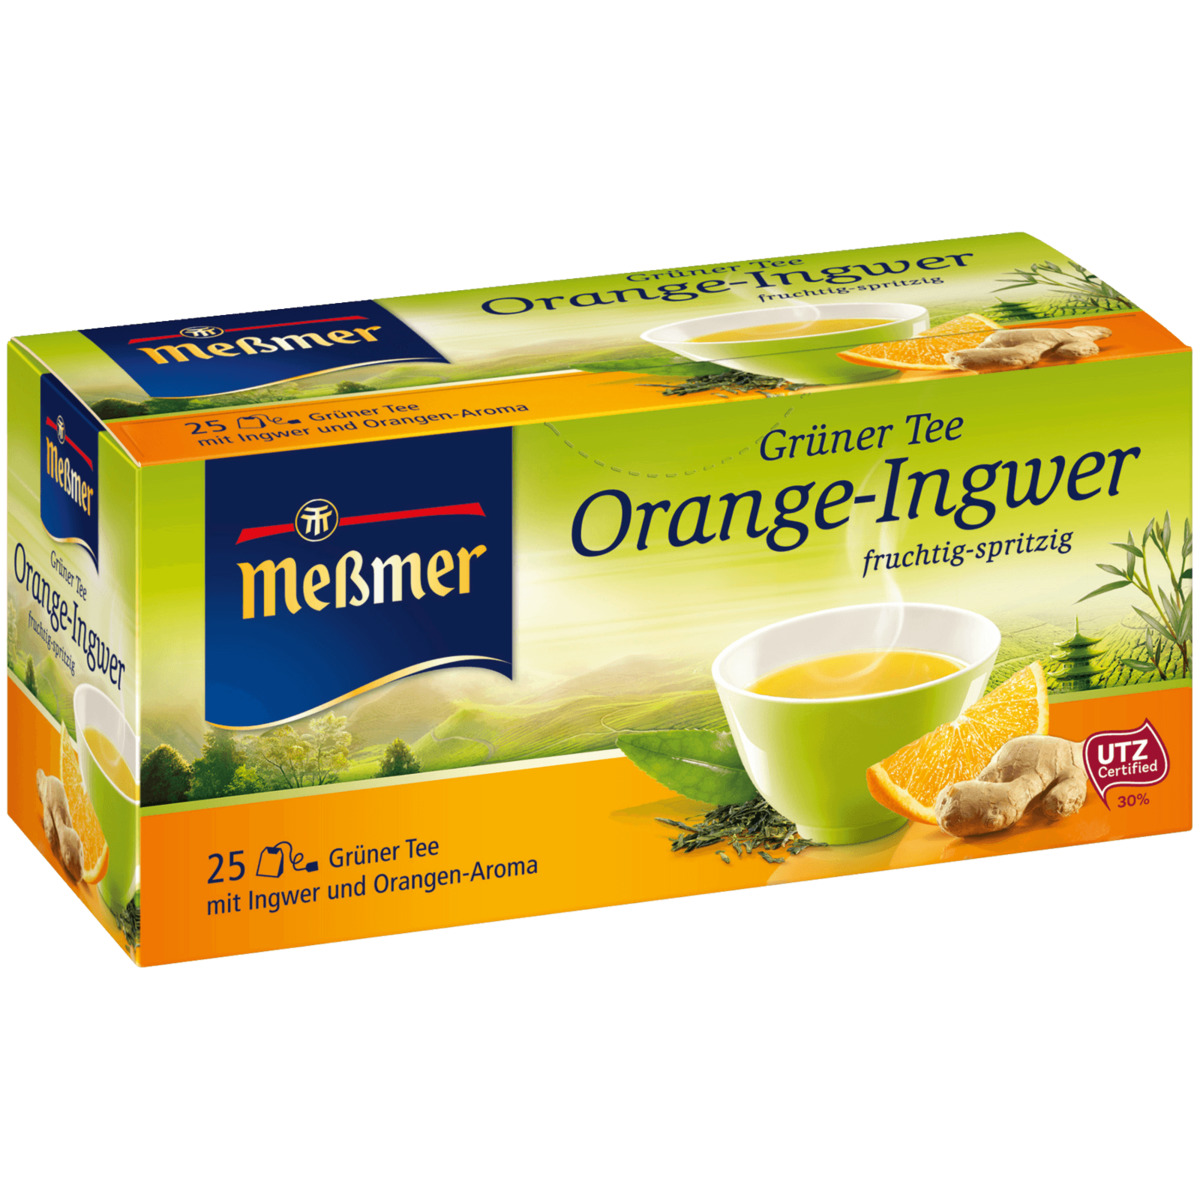 Meßmer Grüner Tee Orange-Ingwer 44g, 25 Beutel von REWE ansehen!